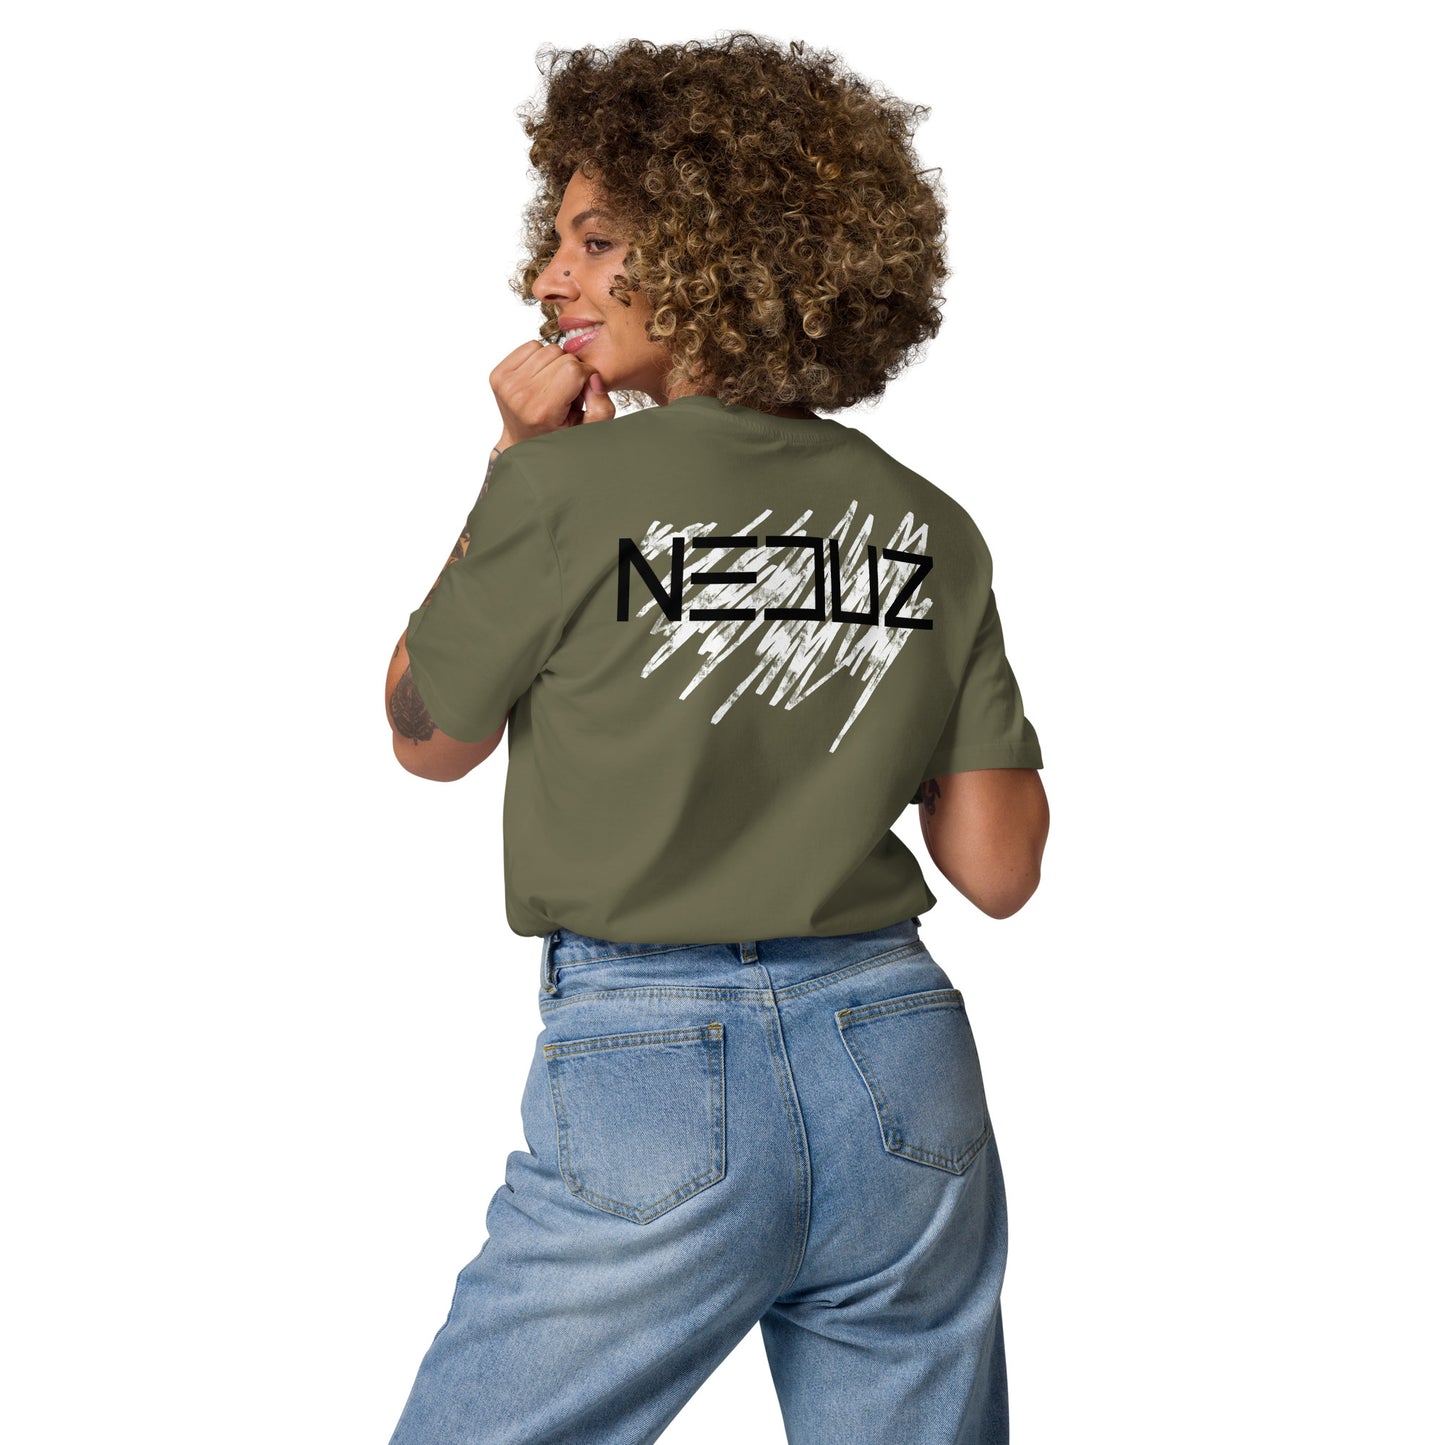 Neduz Logo Organic Cotton Unisex T-Shirt - Artist Merchandise - Neduz Merch Collection